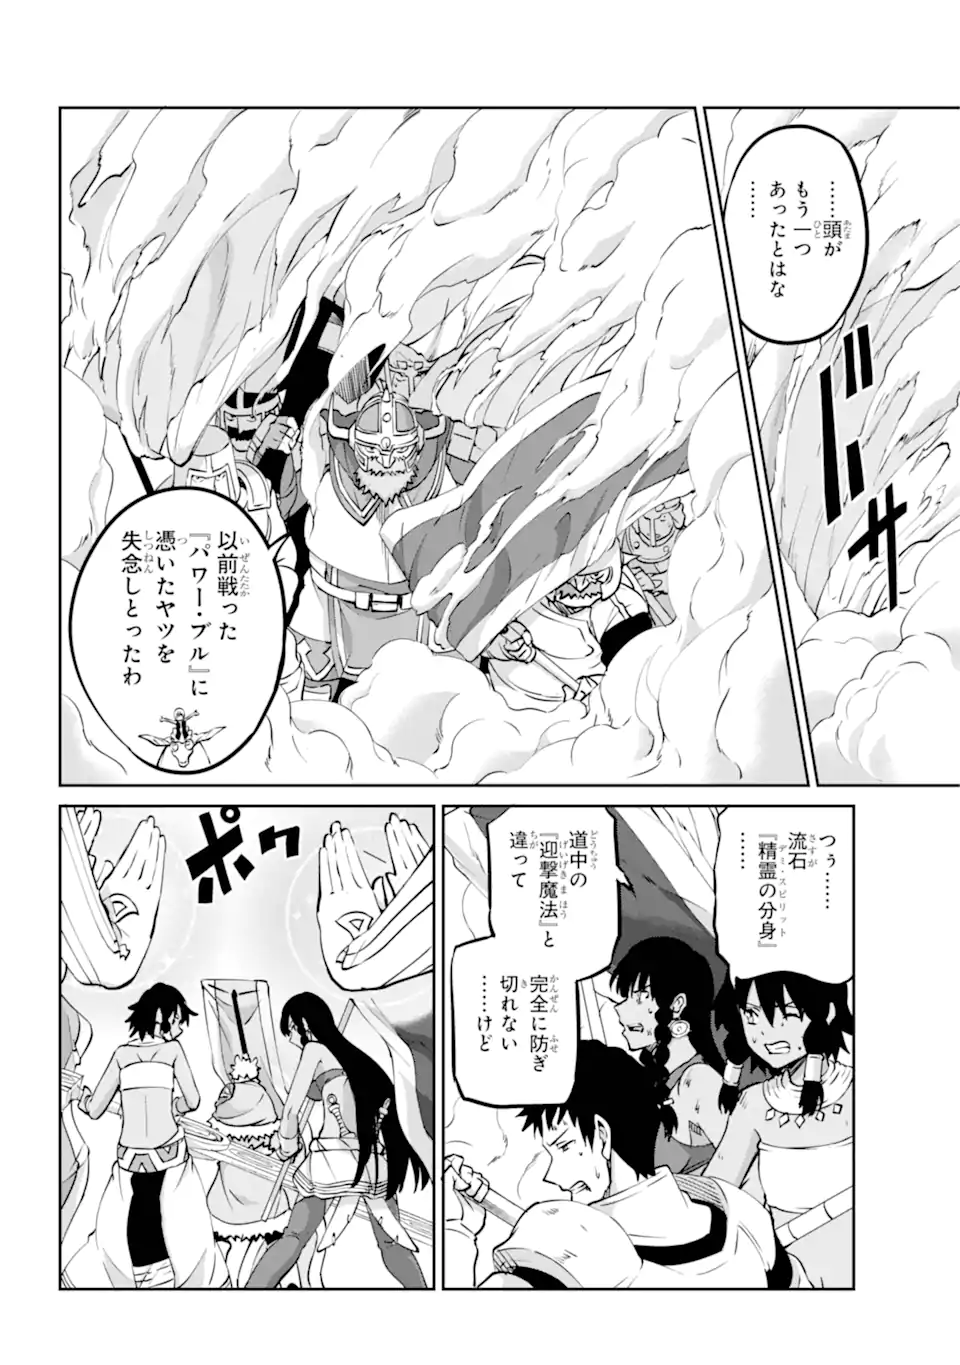 Dungeon ni Deai wo Motomeru no wa Machigatte Iru Darou ka Gaiden - Sword Oratoria - Chapter 118.2 - Page 1